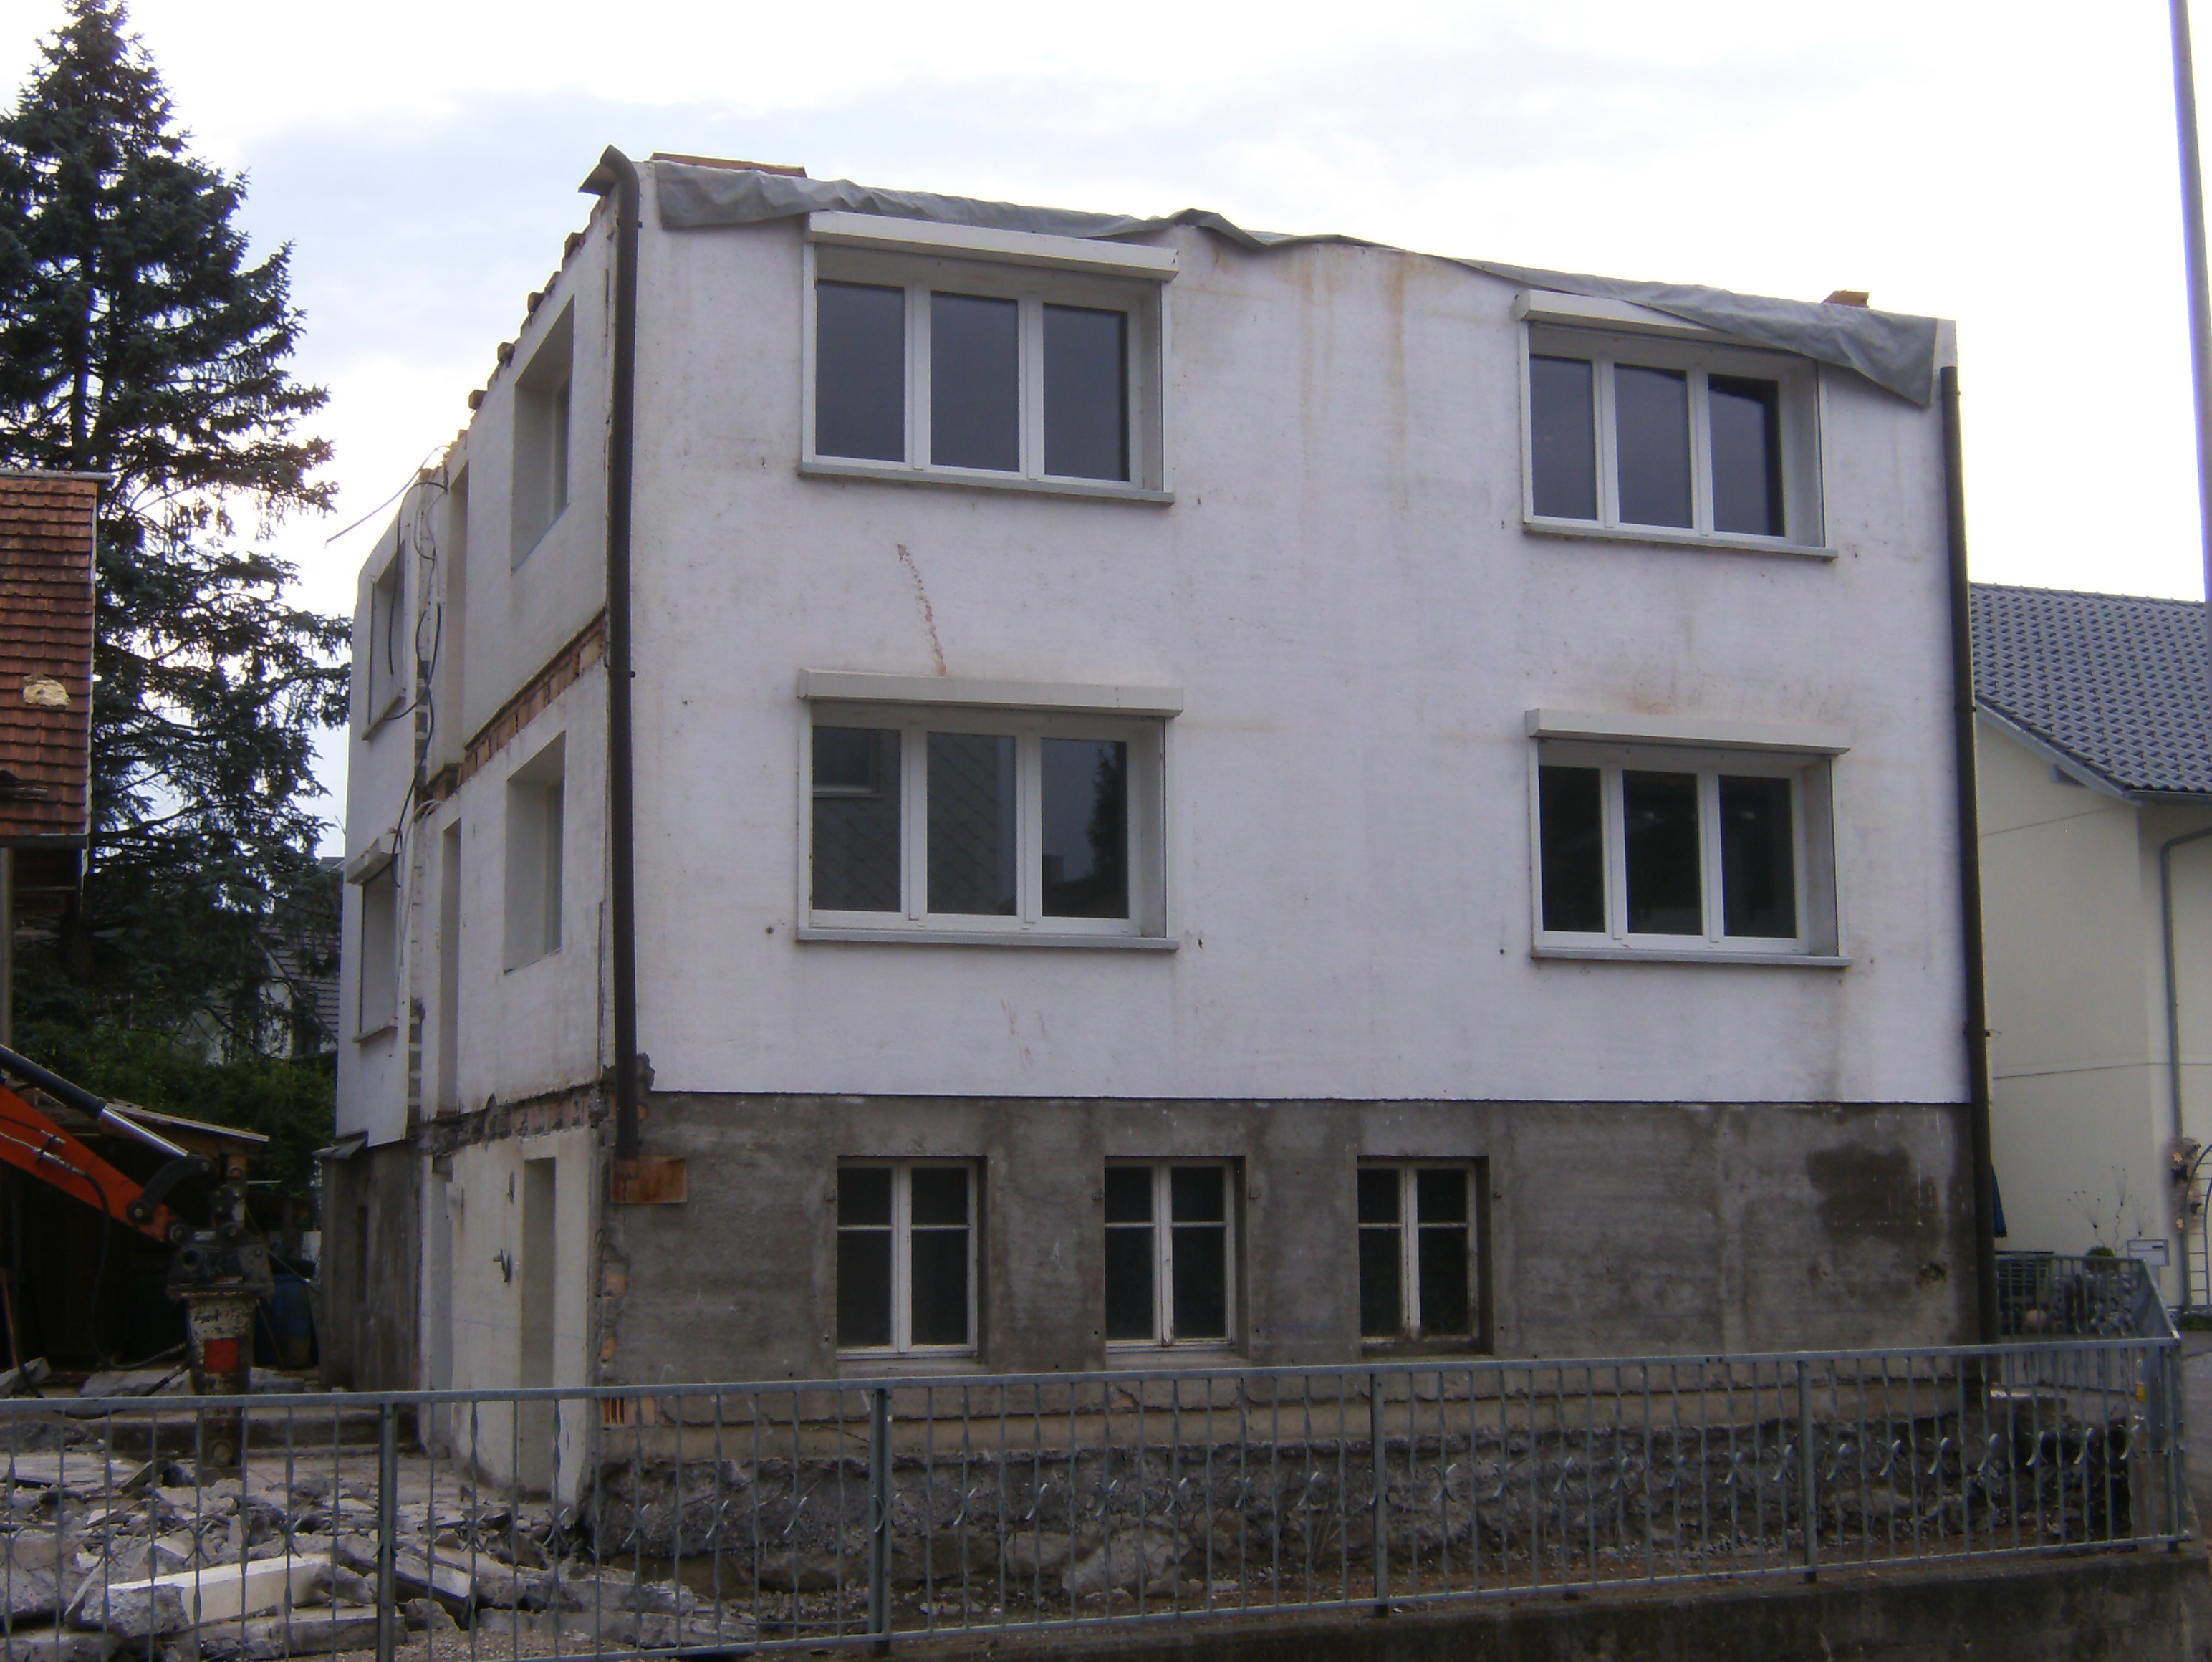 Linthstrasse 36, Tuggen - Dachkonstruktion abgebrochen